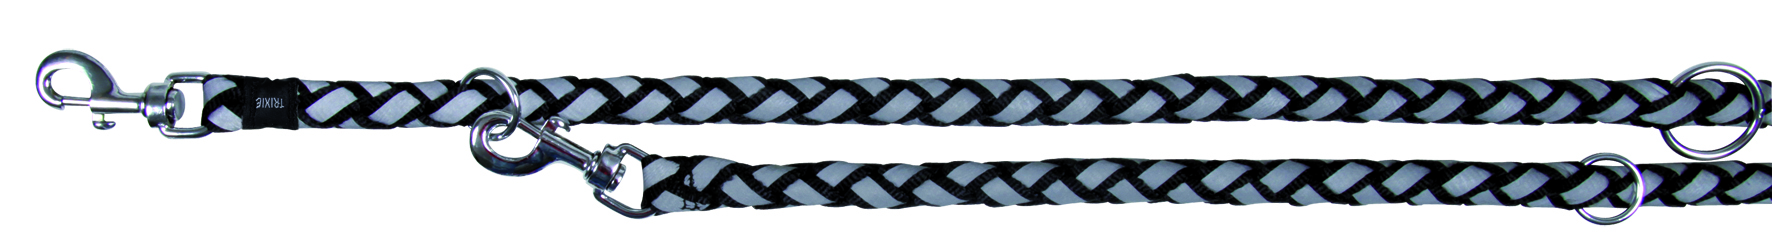 Поводок-перестежка Cavo светоотражающий черный/серый, Trixie от зоомагазина Дино Зоо